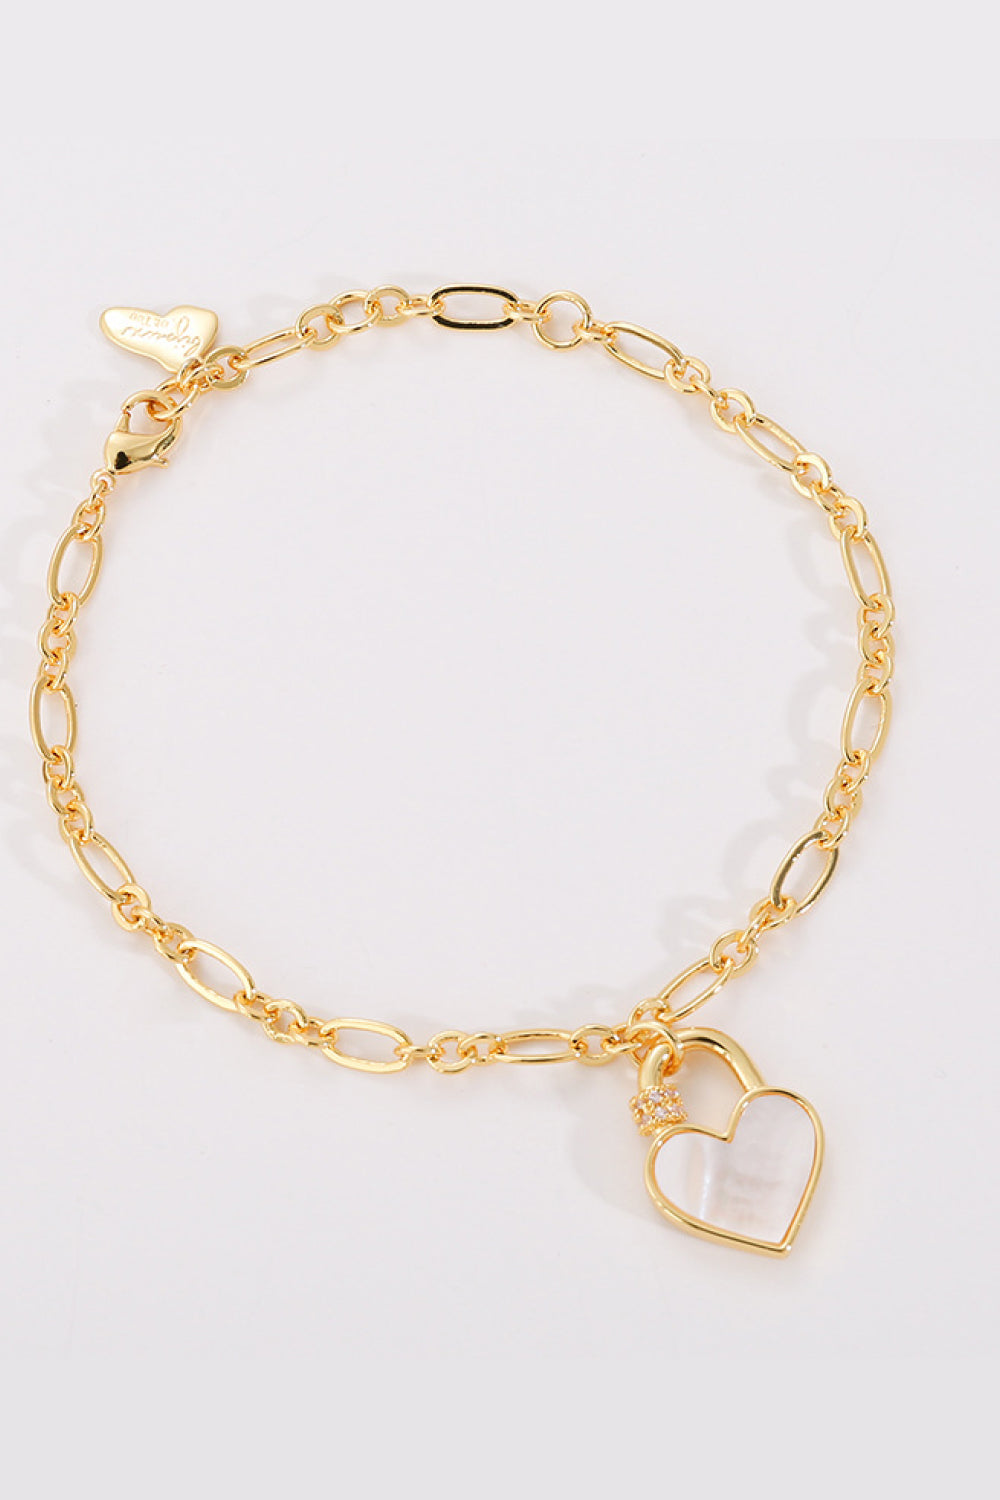 Heart Lock Charm Bracelet - Women’s Jewelry - Bracelets - 2 - 2024